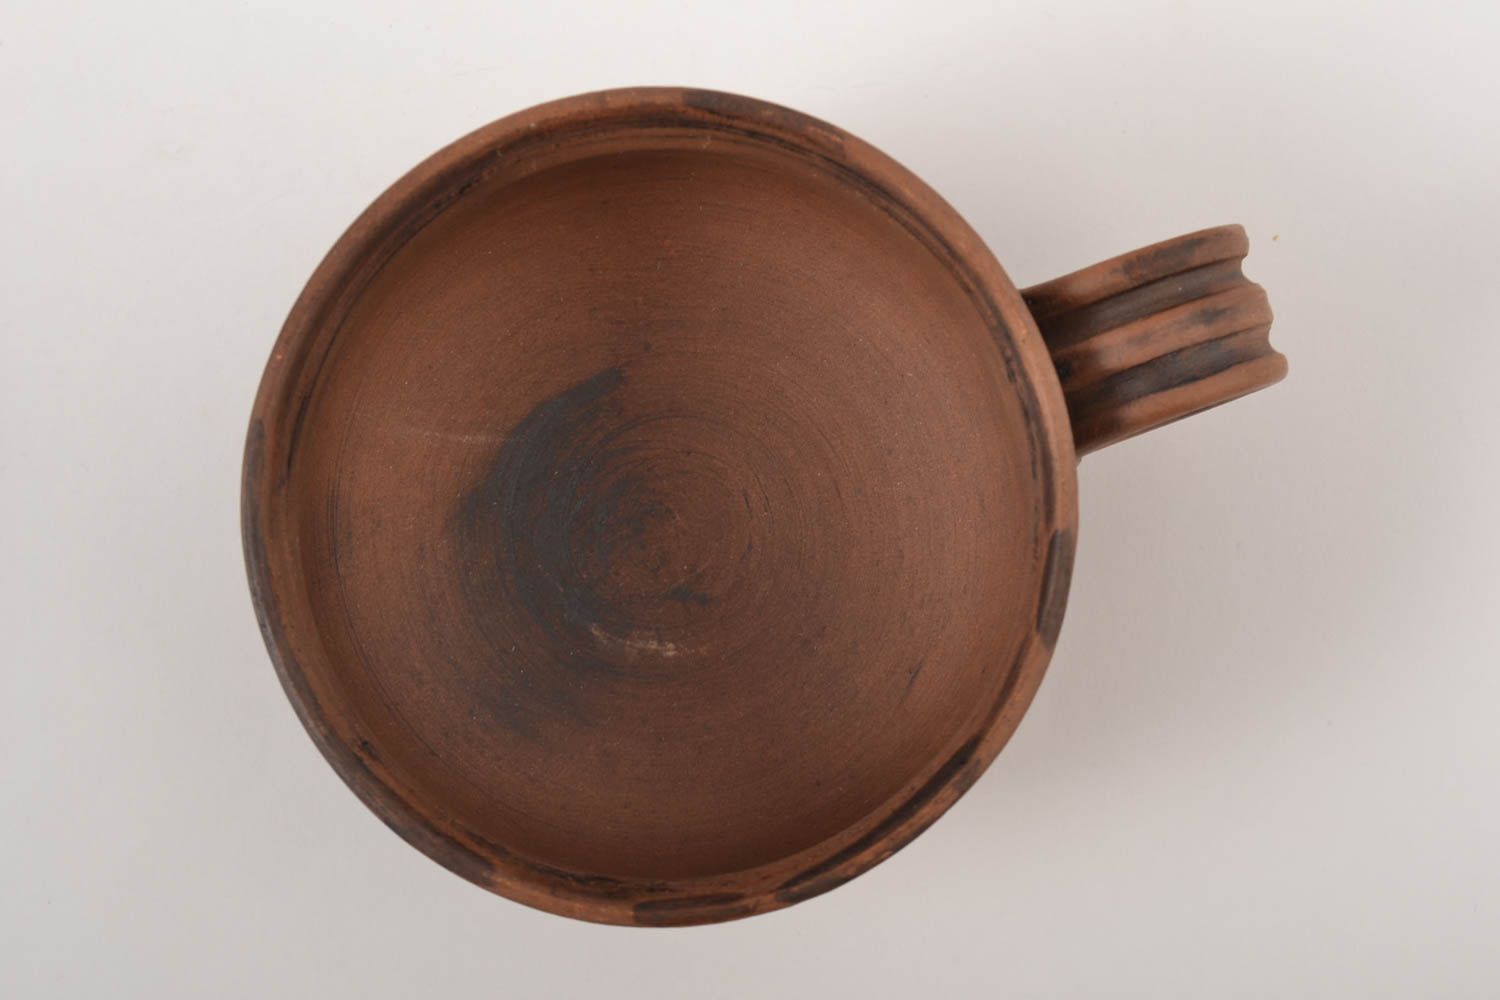 Originelles Geschenk Keramik Geschirr Tee Tasse handmade schön Küchen Zubehör foto 4